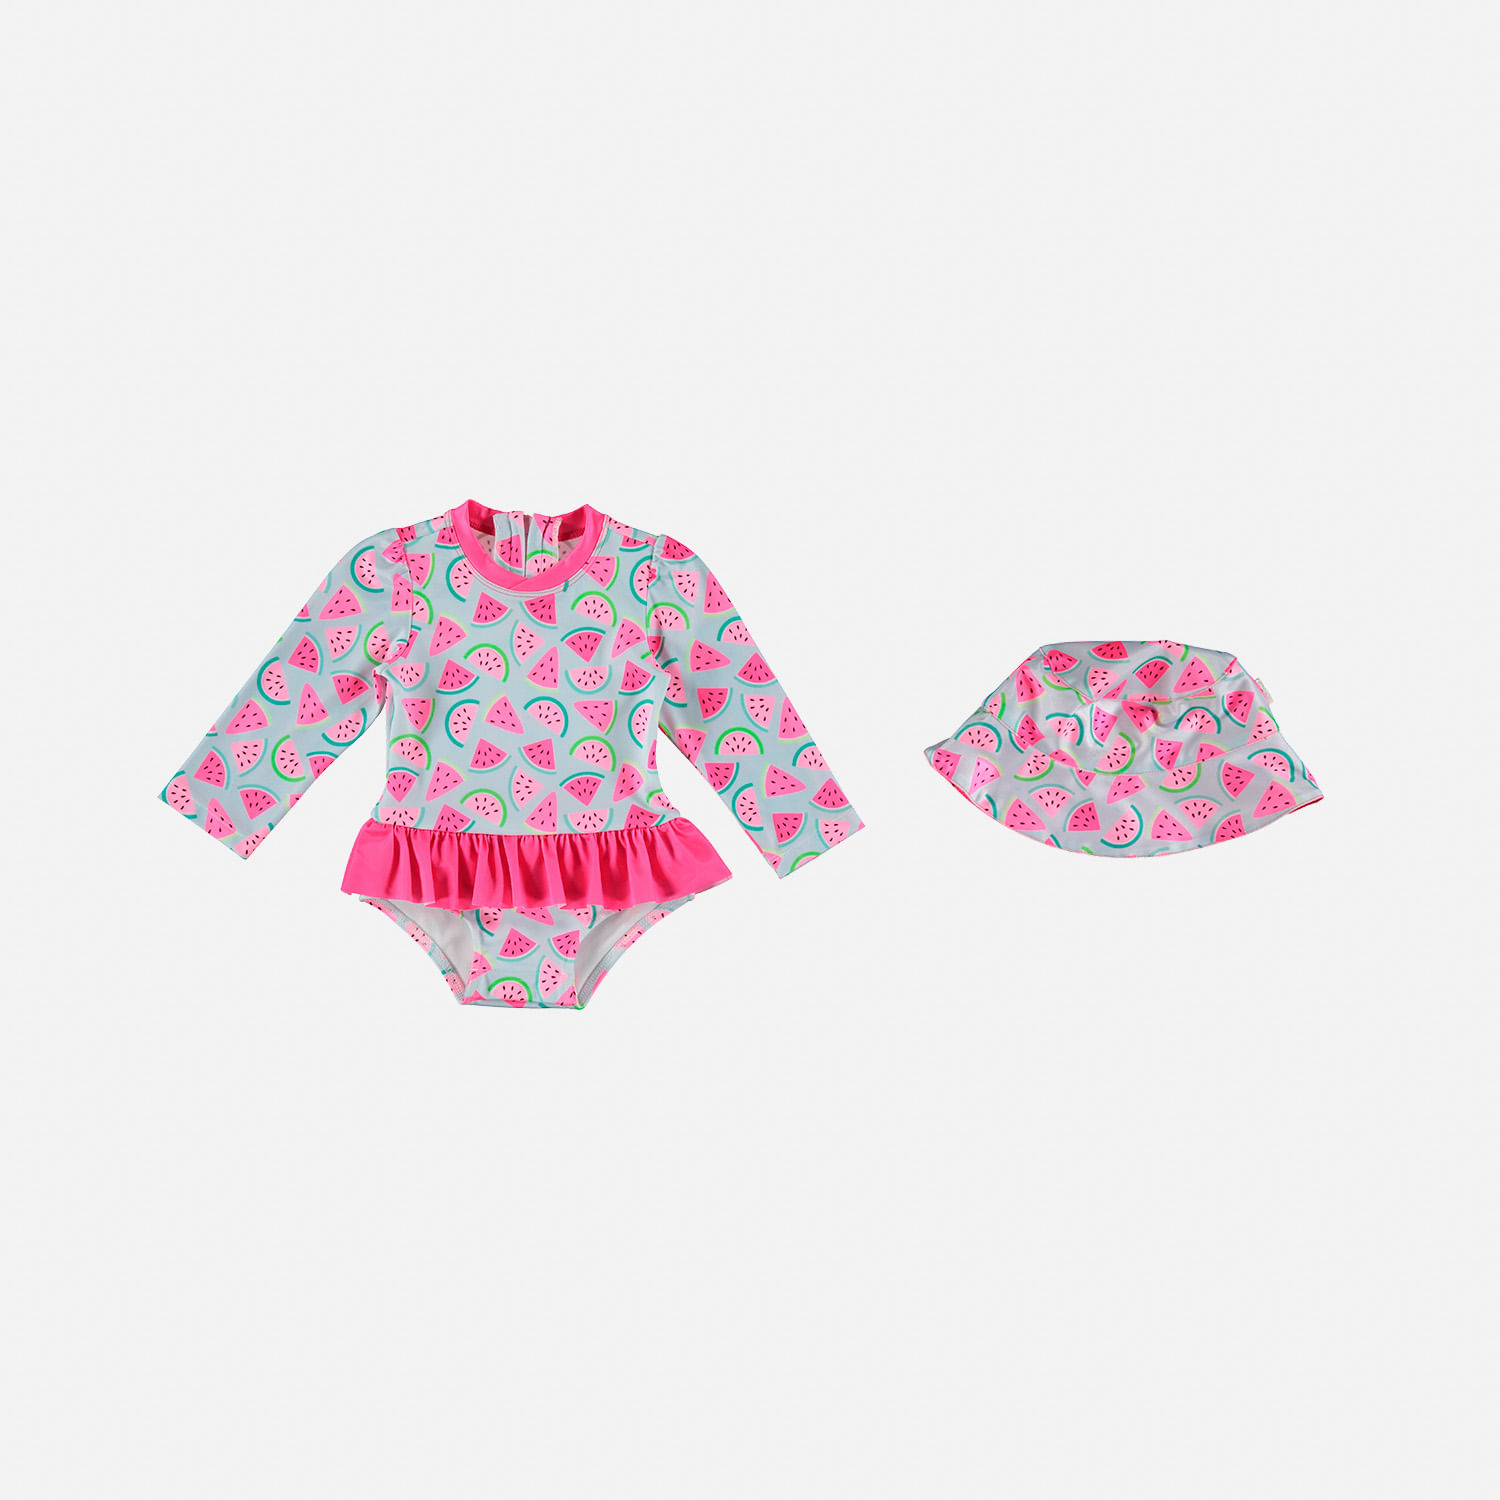 Vestido de baño LittleMic con gorro azul y fucsia para bebé niña - Tienda Online MIC